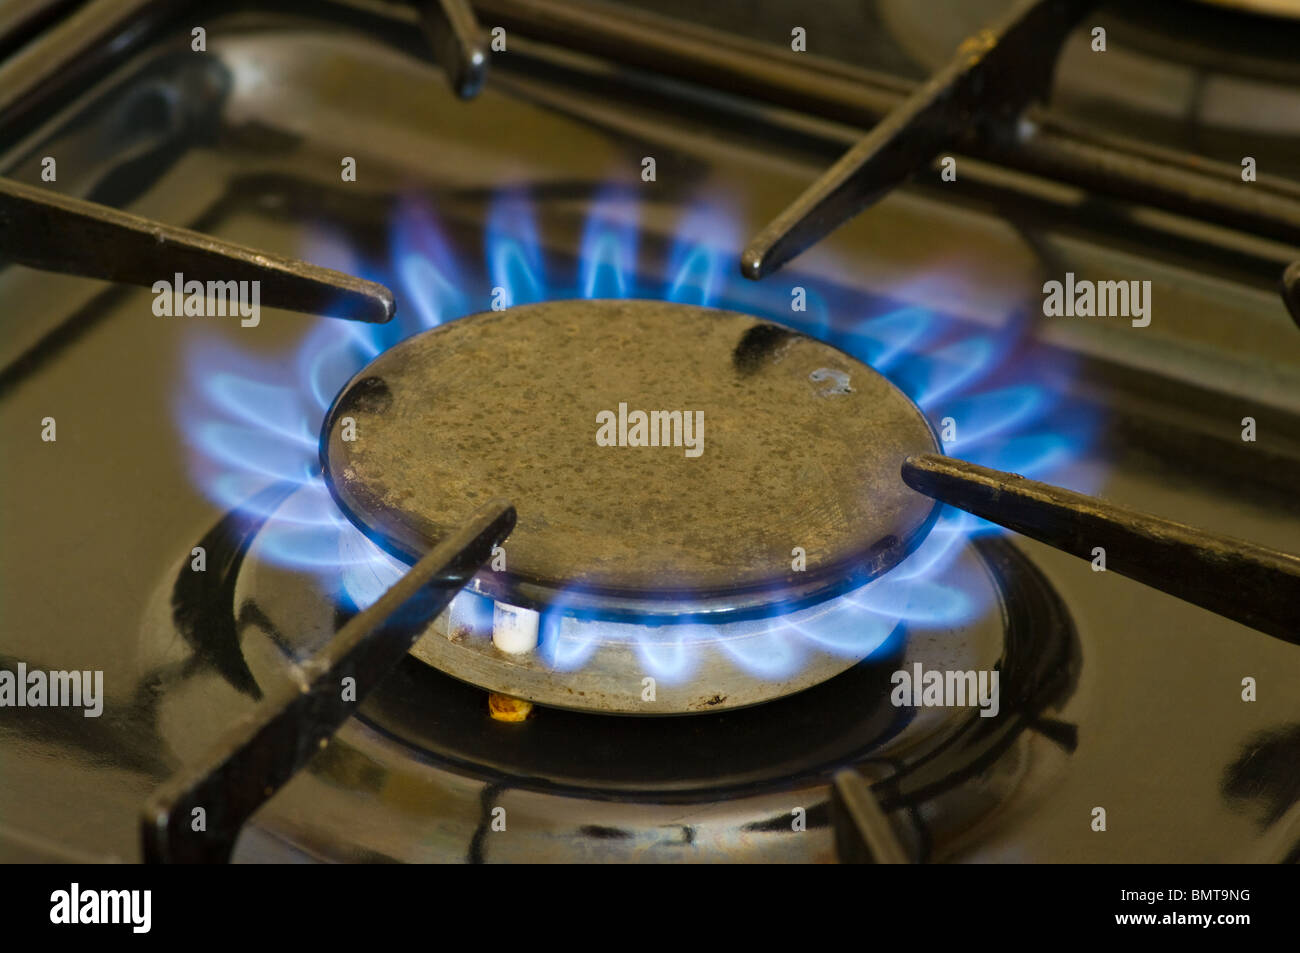 L'anneau de gaz allumé sur une cuisinière Banque D'Images